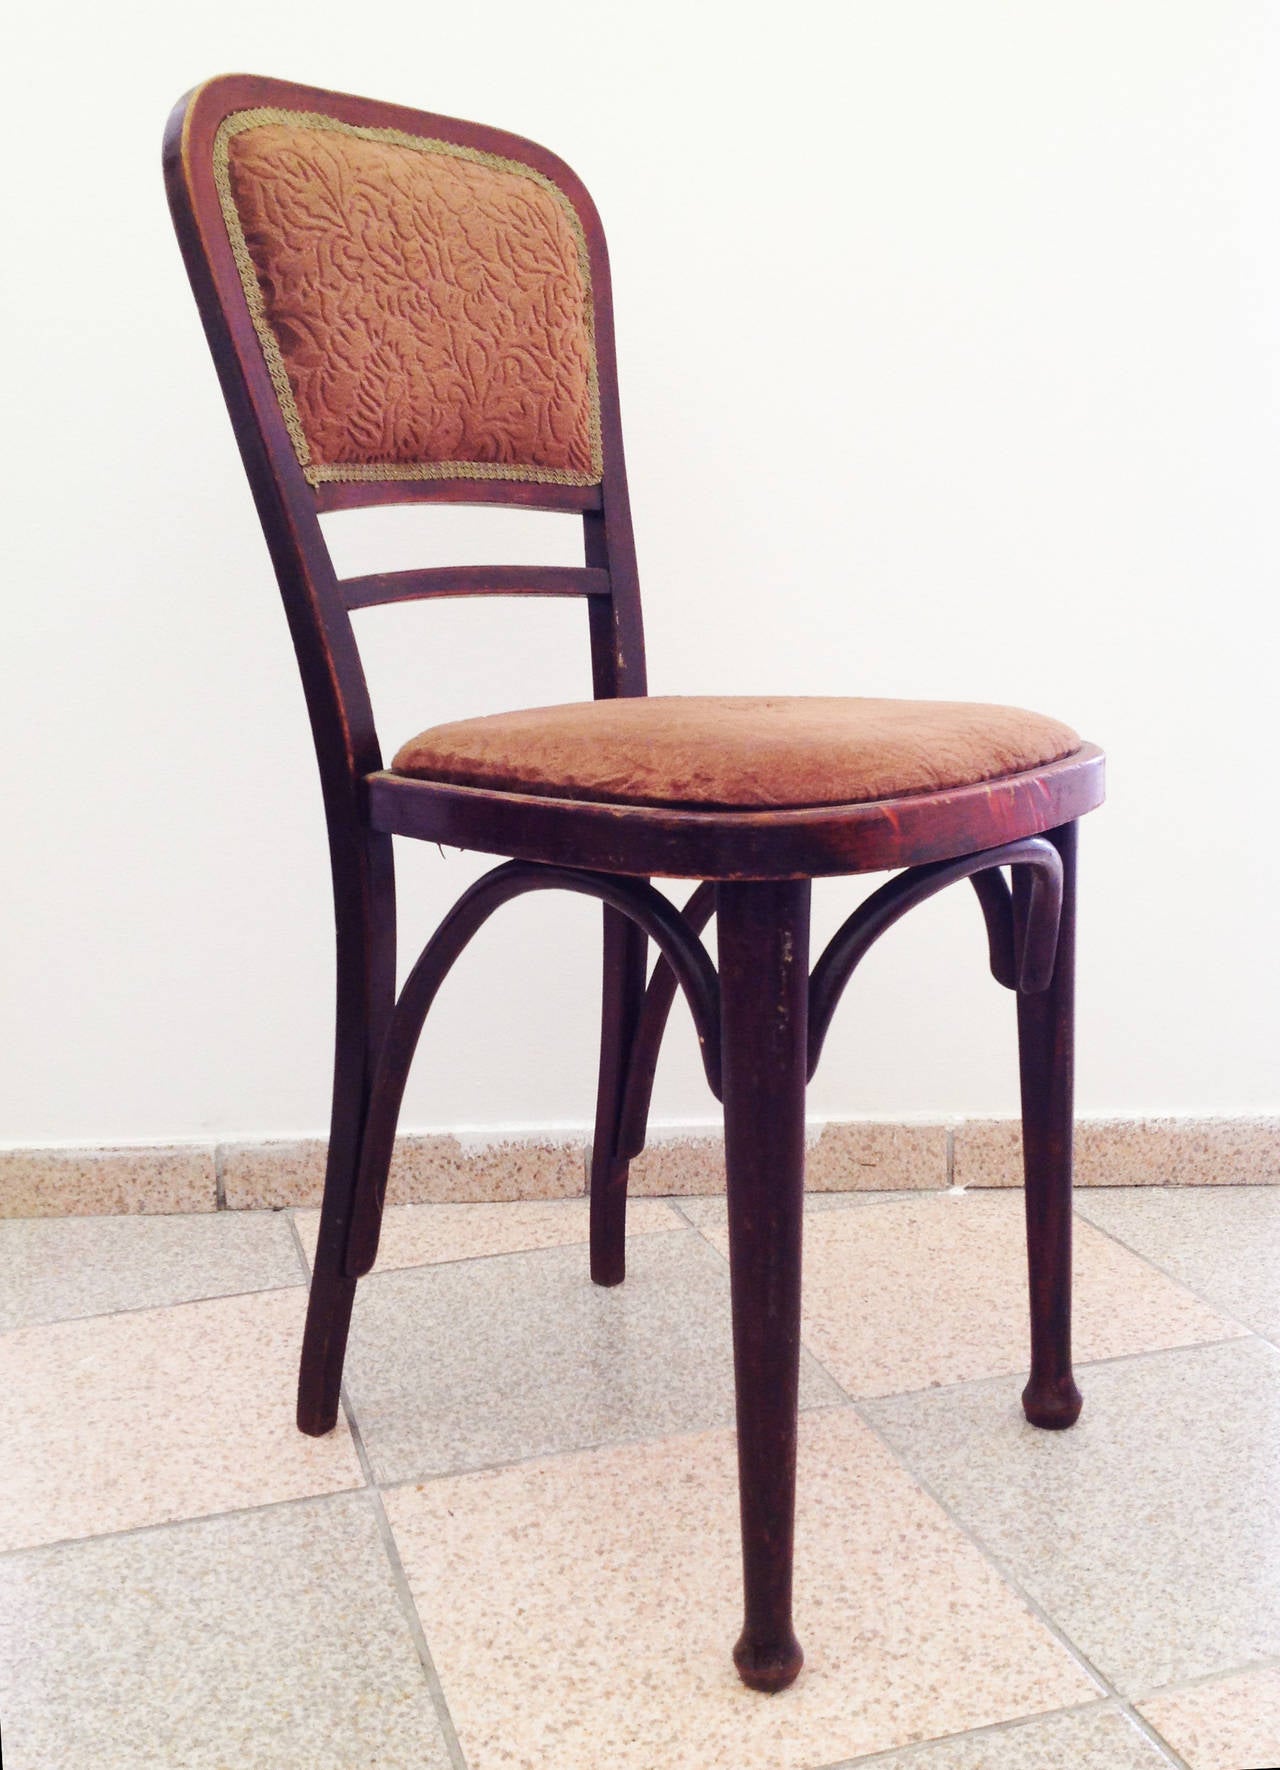 Paire de chaises Thonet 492 encore non restaurées attribuées à Gustav Siegel
Les chaises peuvent être restaurées à la demande du client, ce qui signifie que la couleur du bois et le tissu ou le cuir peuvent être choisis par l'acheteur